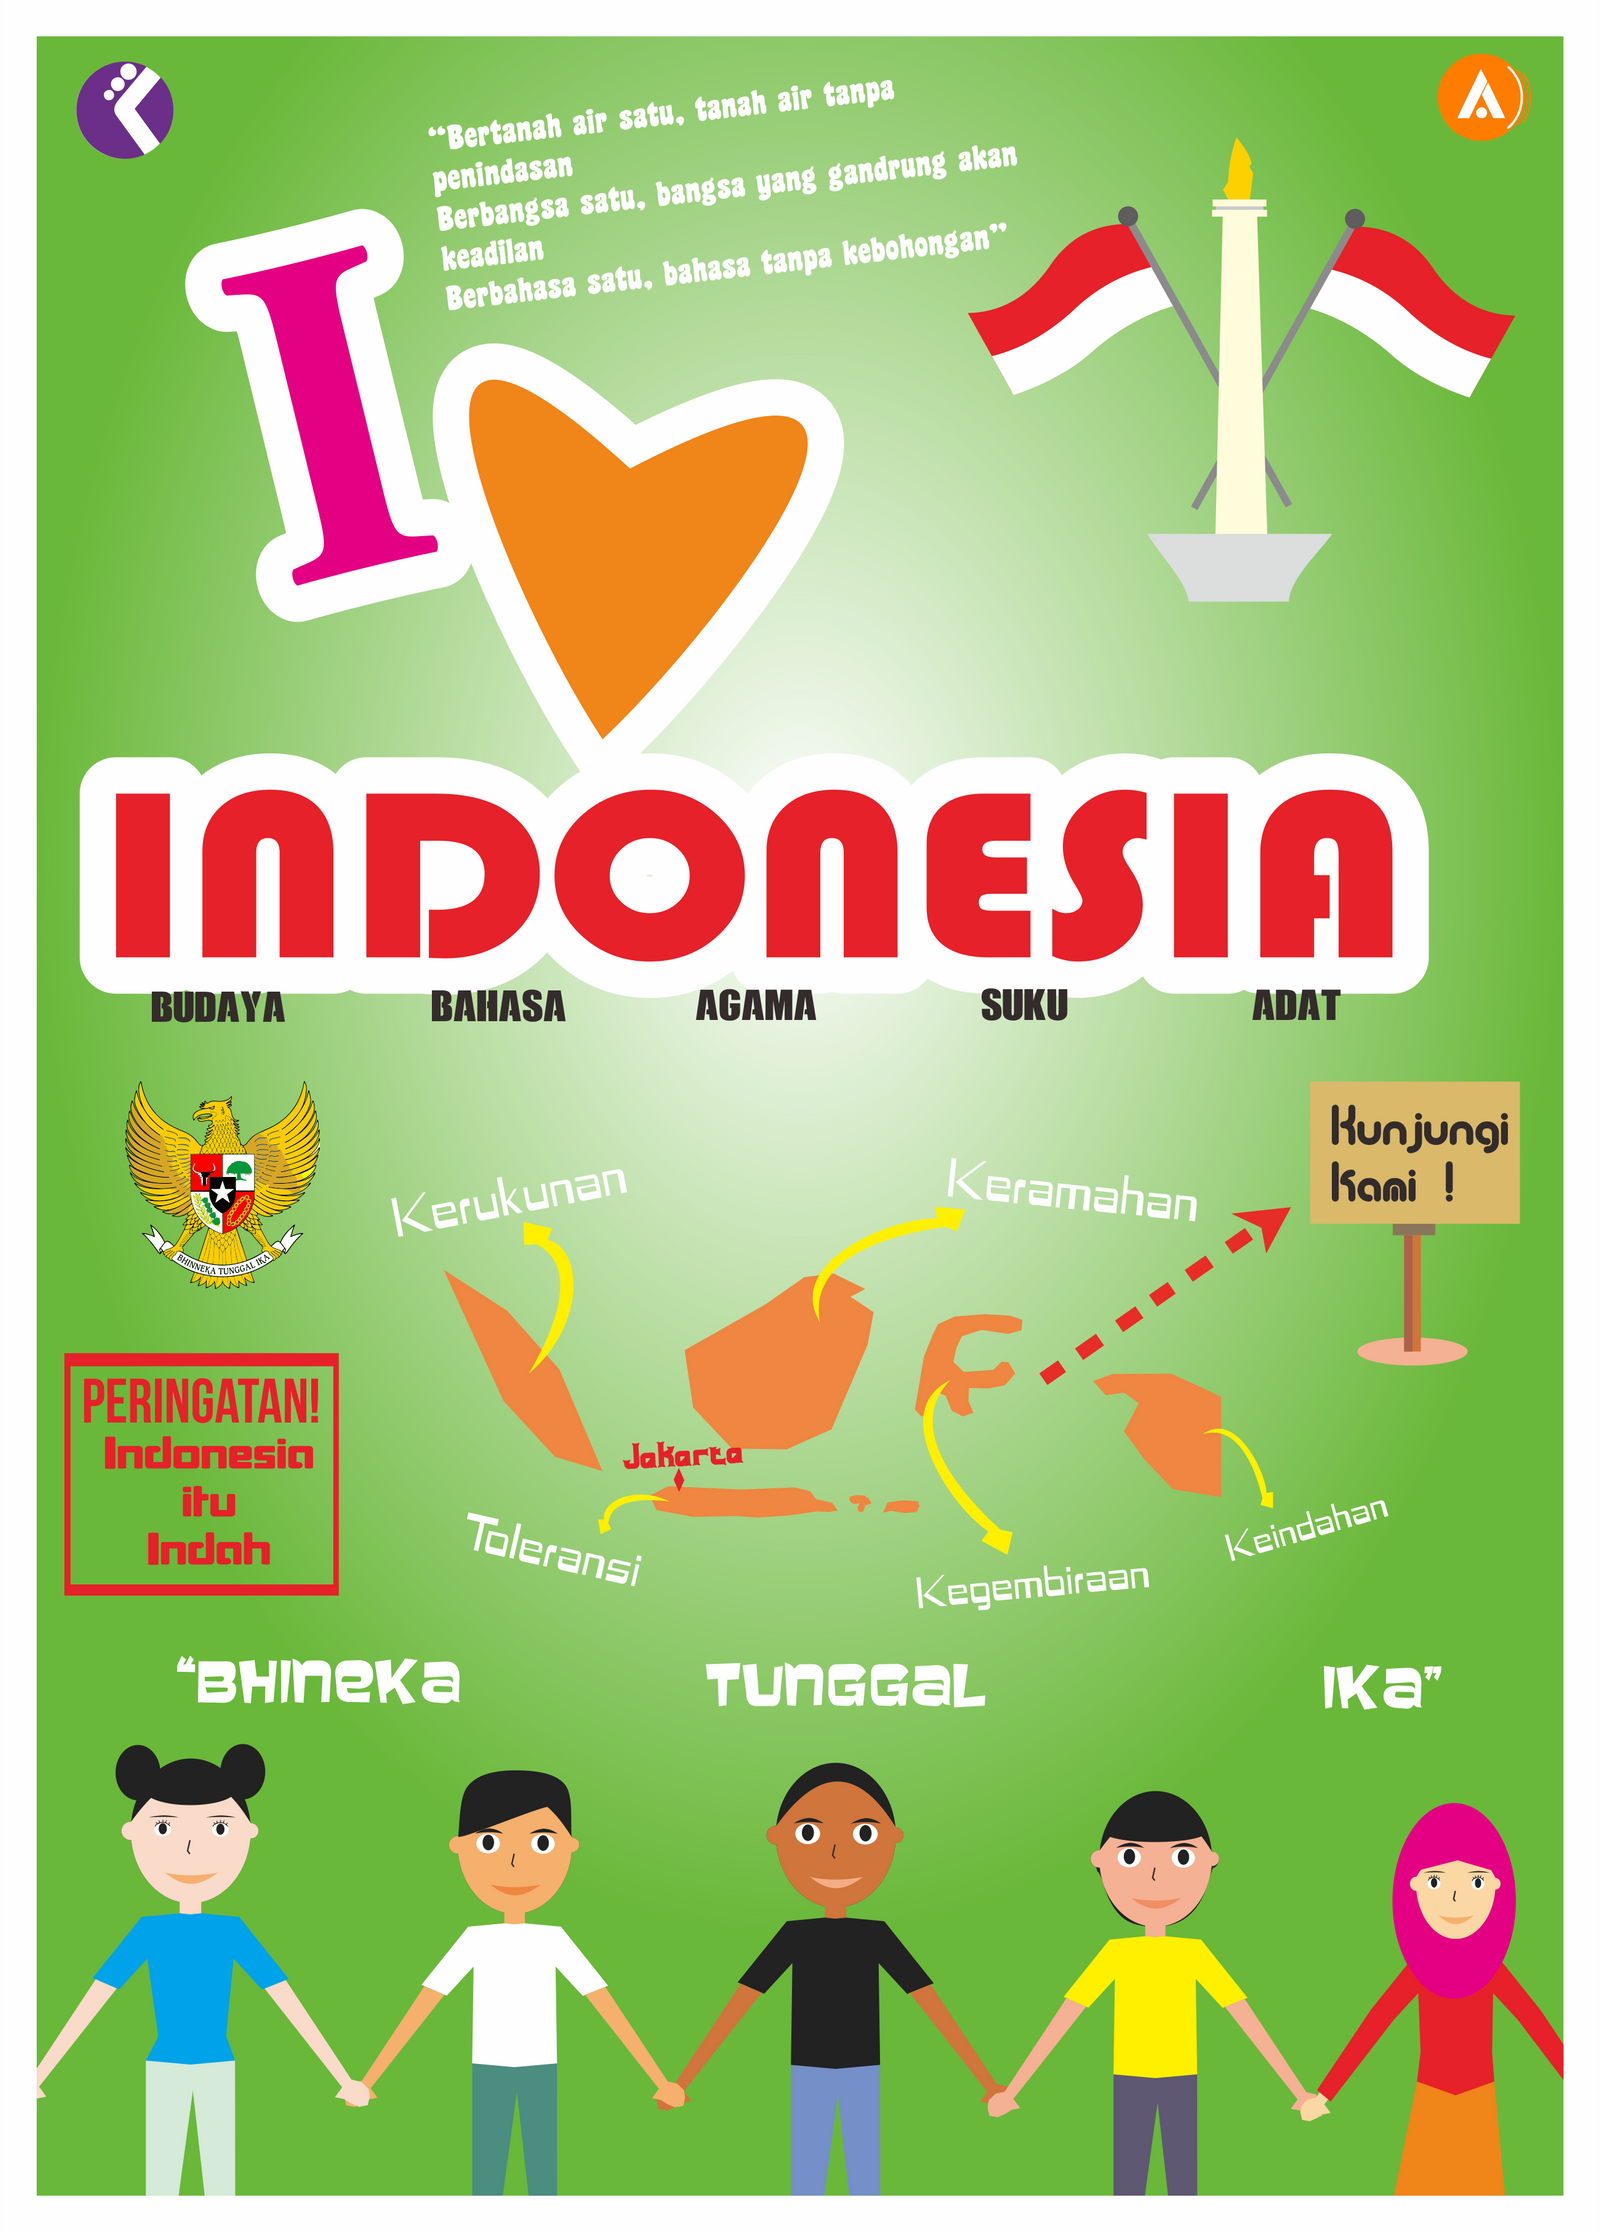 Cintai Budaya Indonesia Jelaskan Maksud Poster Tersebut Penggambar